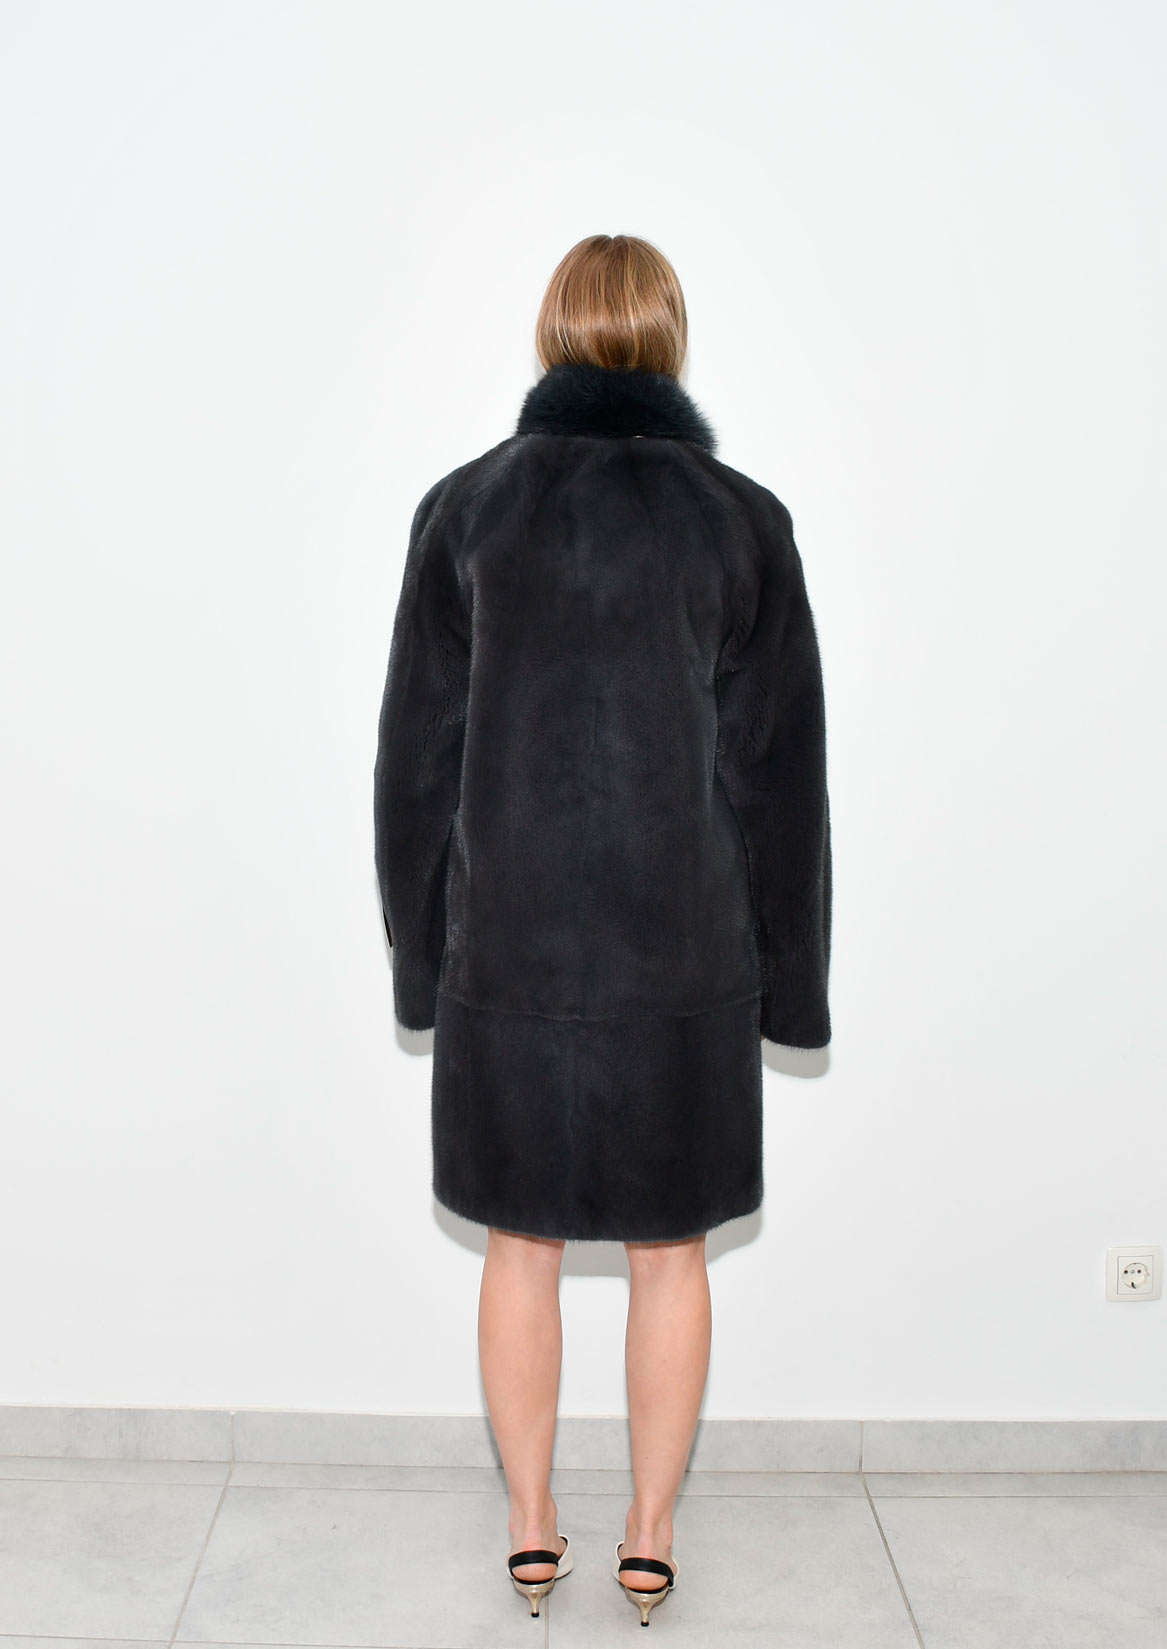 2 Midle fur coat vizon Frost 90cm 44 48 size 1800e